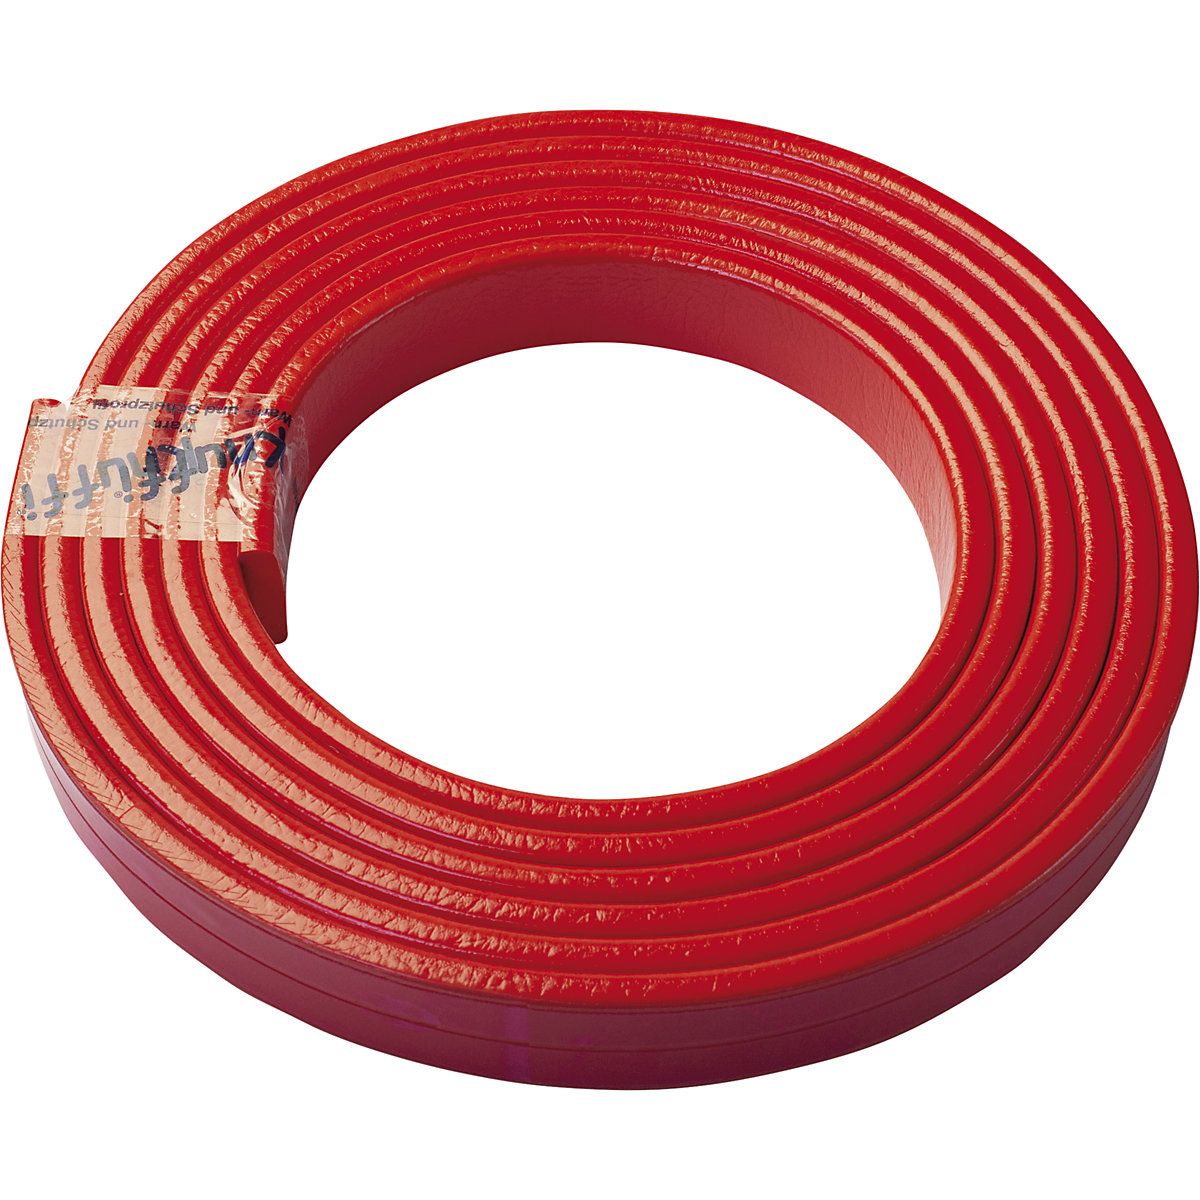 Protection des surfaces Knuffi® – SHG, type F, 1 rouleau de 5 m, rouge